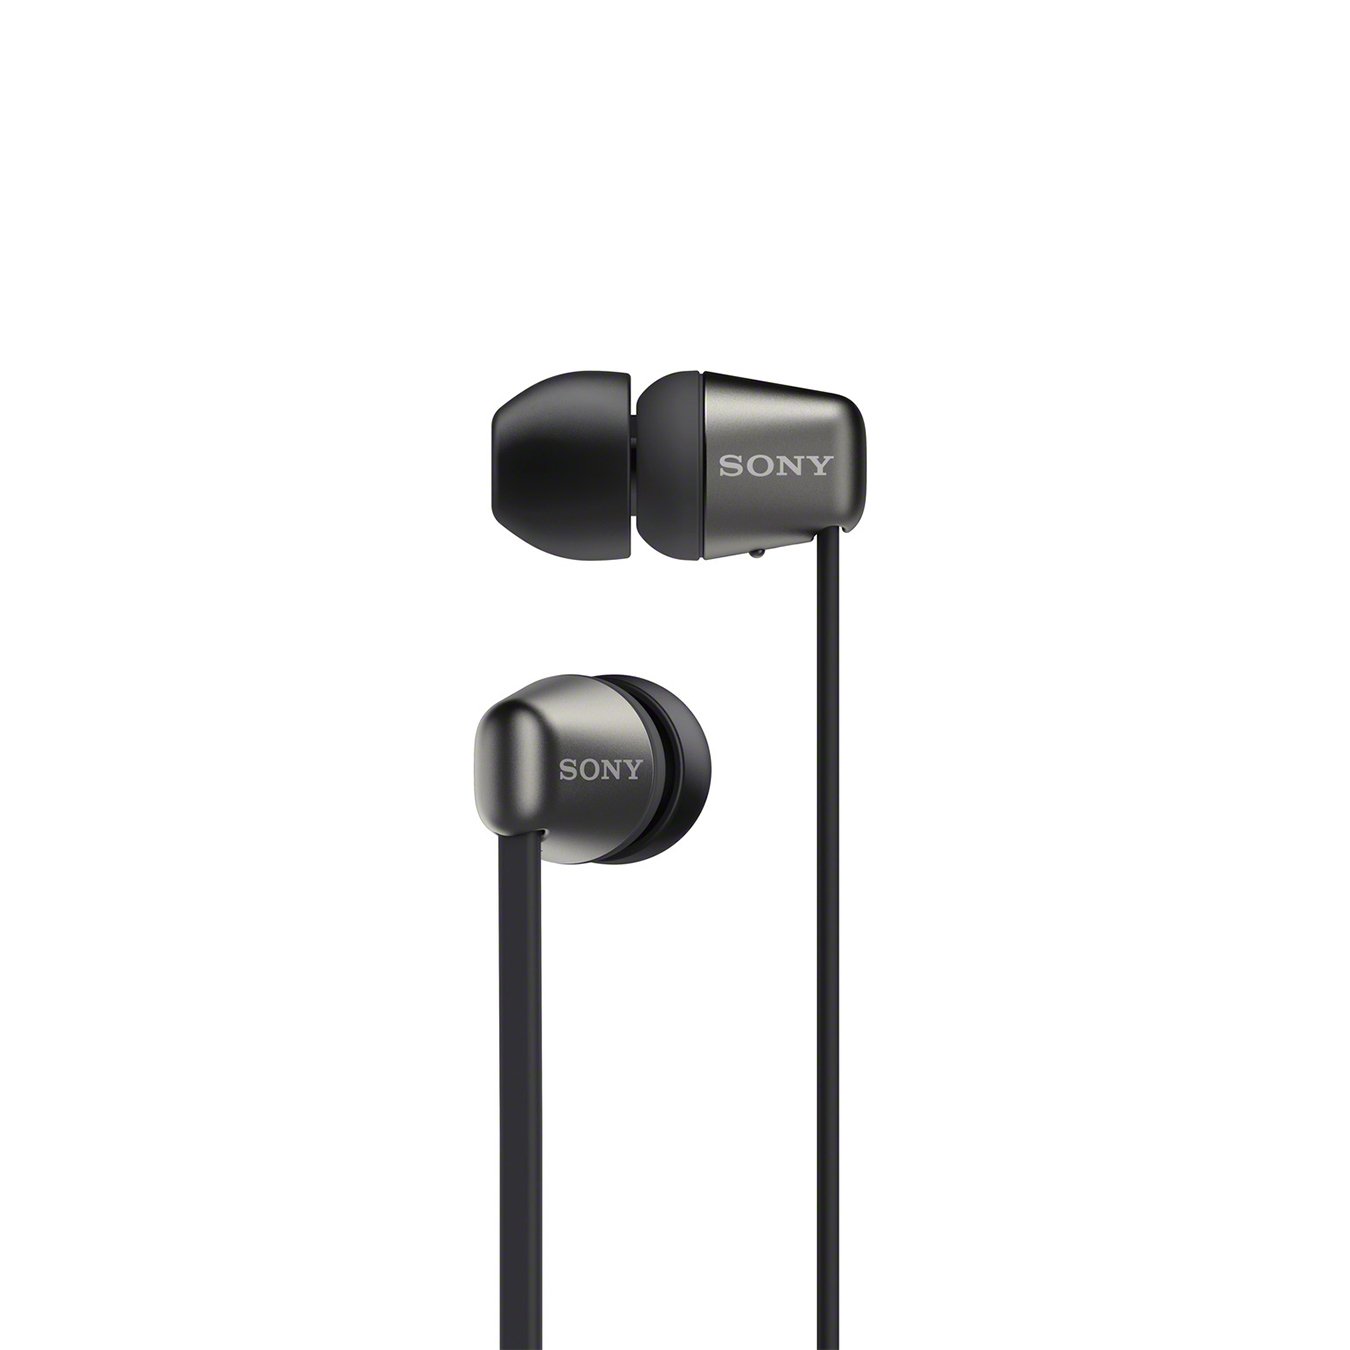 Sony WI-C310 In-Ear Wireless Headphones Review